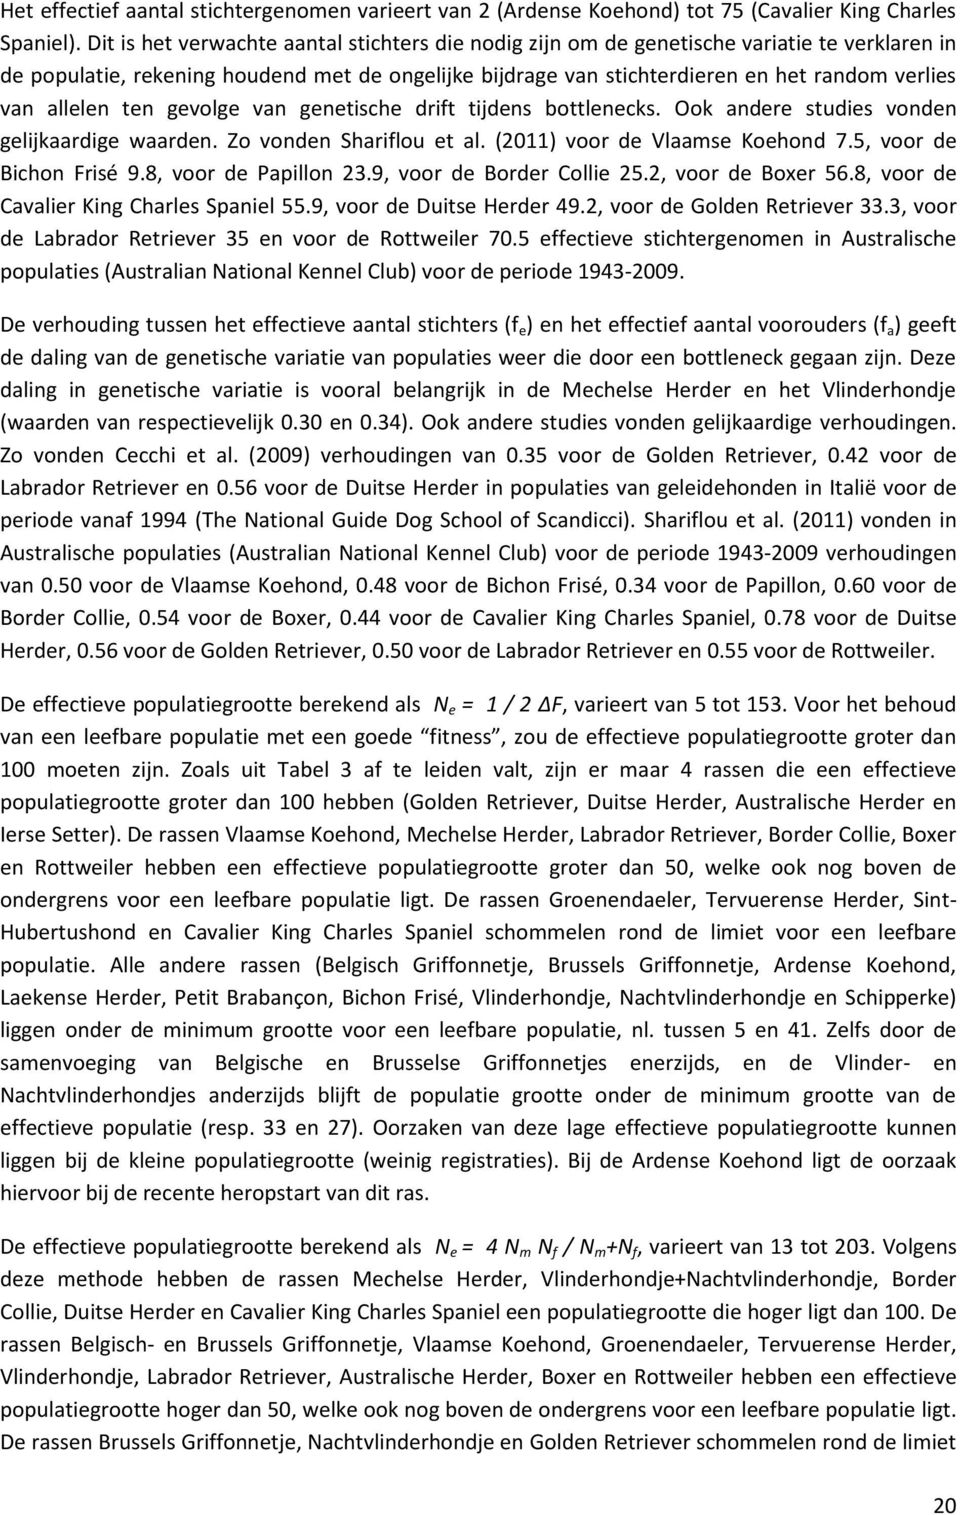 allelen ten gevolge van genetische drift tijdens bottlenecks. Ook andere studies vonden gelijkaardige waarden. Zo vonden Shariflou et al. (211) voor de Vlaamse Koehond 7.5, voor de Bichon Frisé 9.